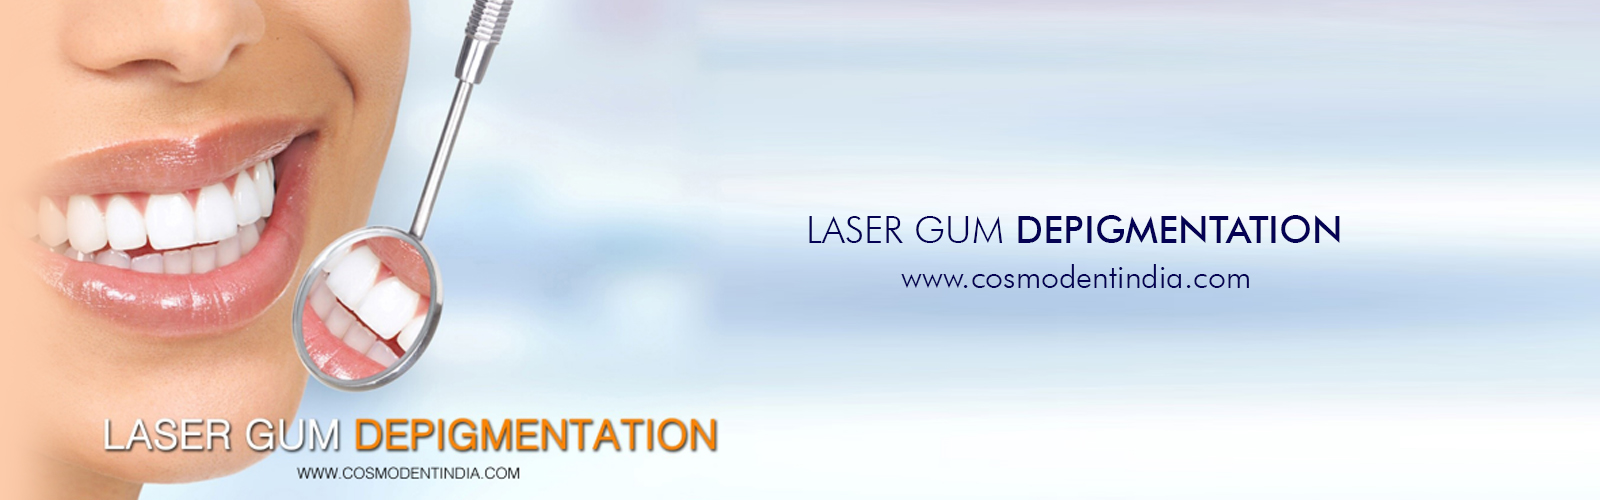 despigmentação por laser